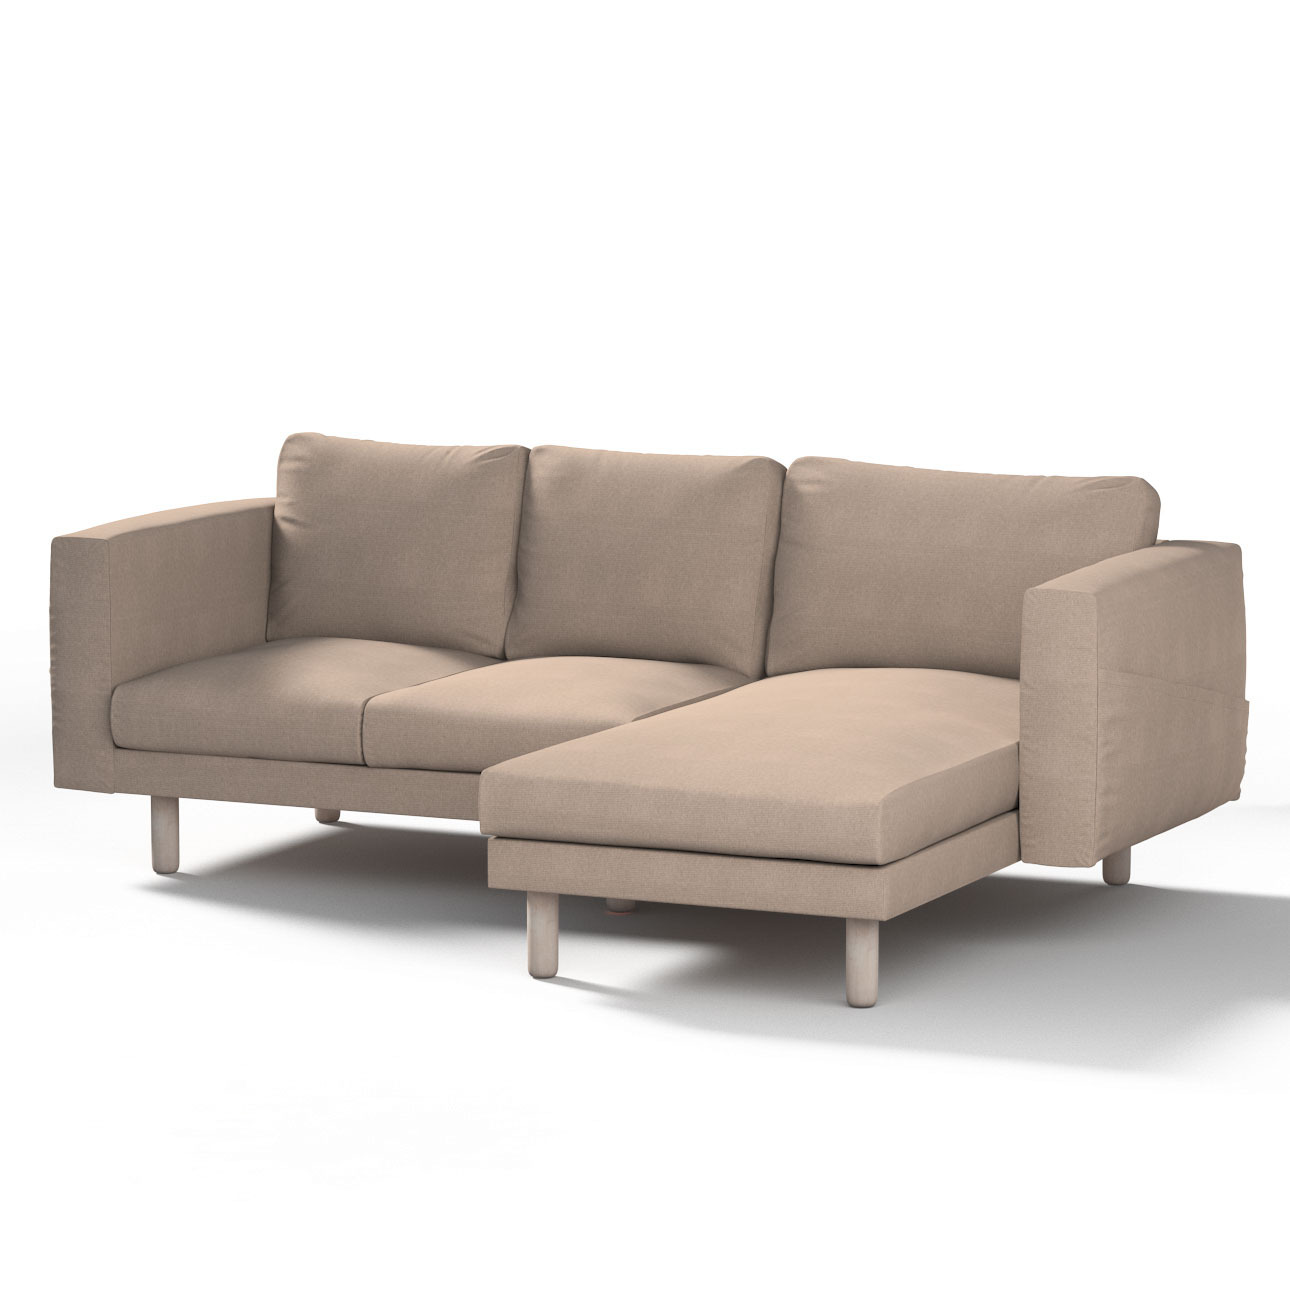 Bezug für Norsborg 3-Sitzer Sofa mit Recamiere, beige-grau, Norsborg Bezug günstig online kaufen